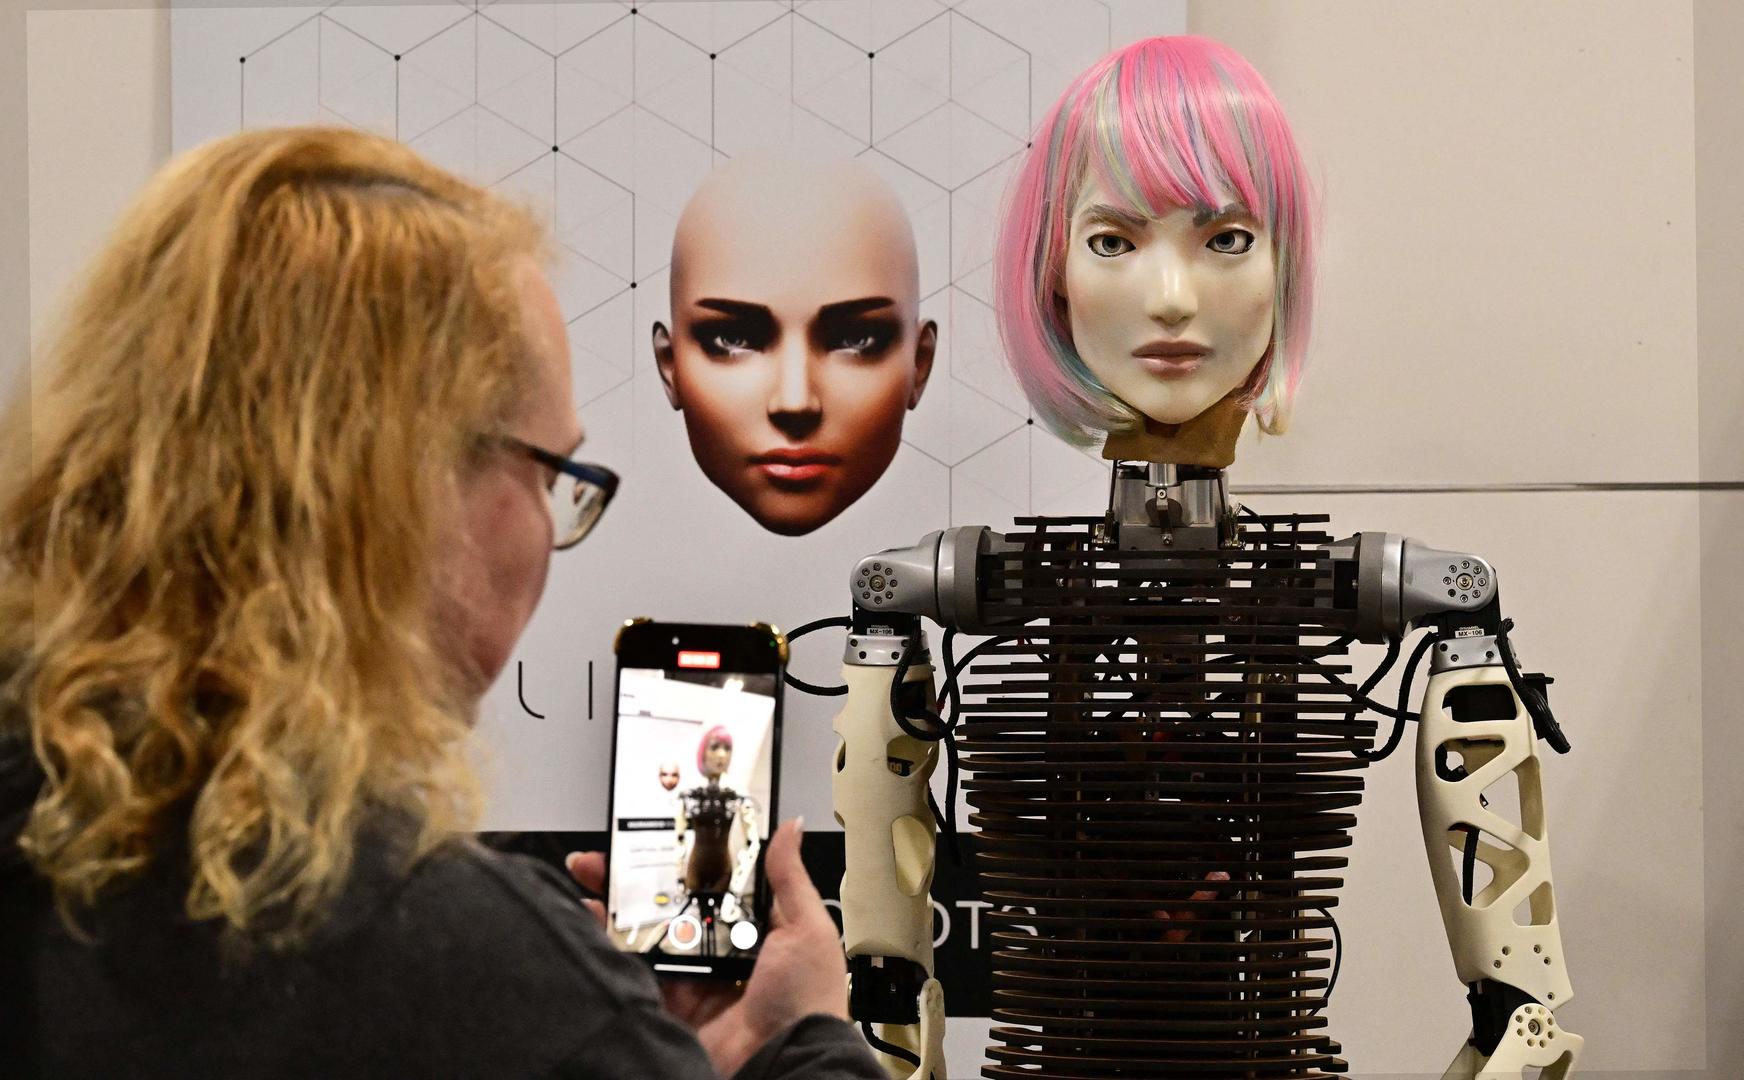 ▲拉斯维加斯CES国际电子消费展上展出的AI仿人机器人 据视觉中国